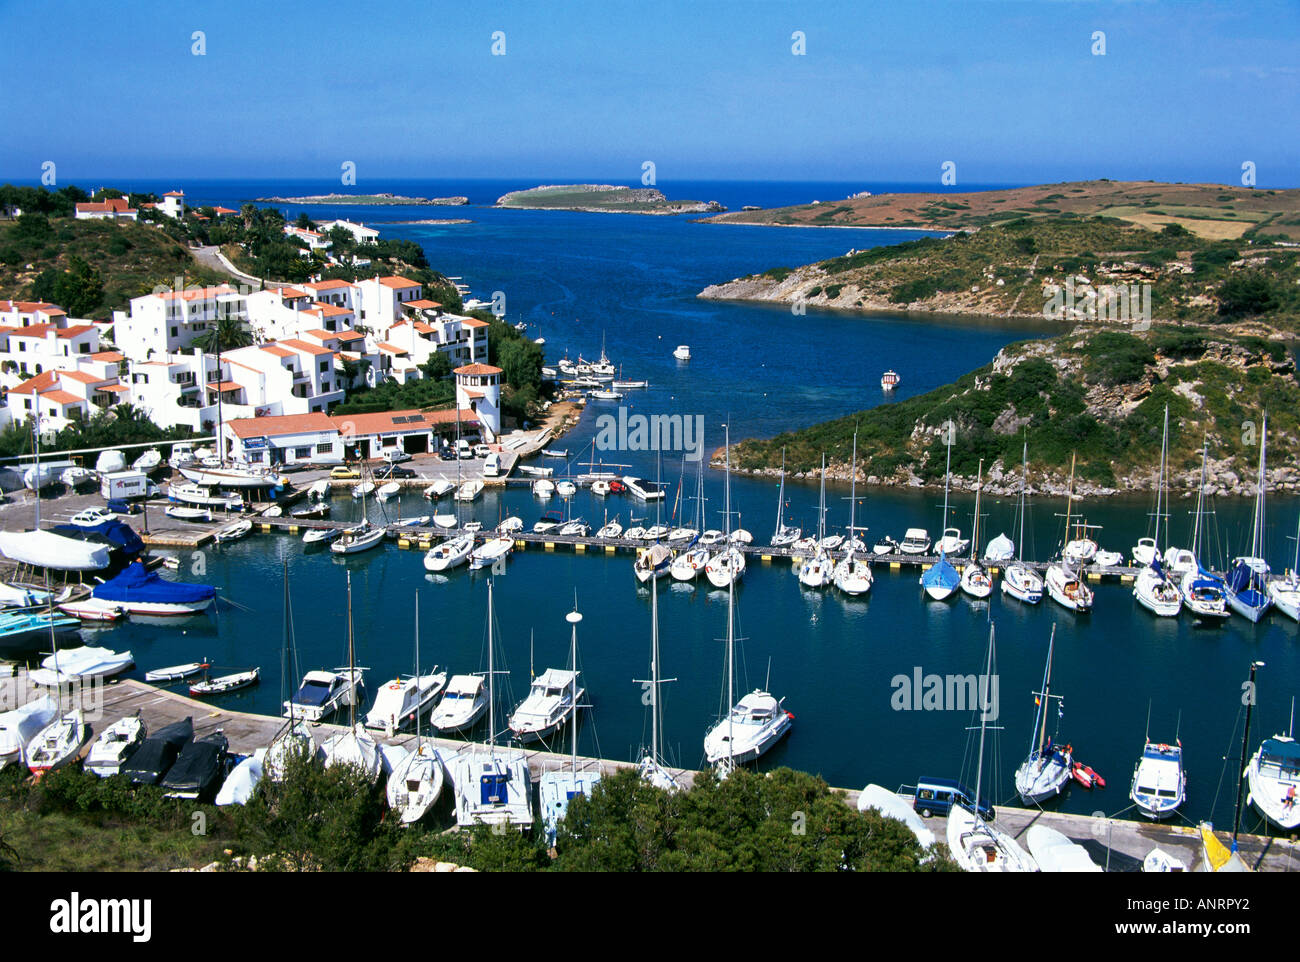 Angesehen von oben Sportboote und Yachten auf den Pontons in der Marina von weiß getünchten Villen mit roten Ziegeldächern an Port d Addaia auf der nördlichen Küste von Menorca übersehen gefesselt Stockfoto